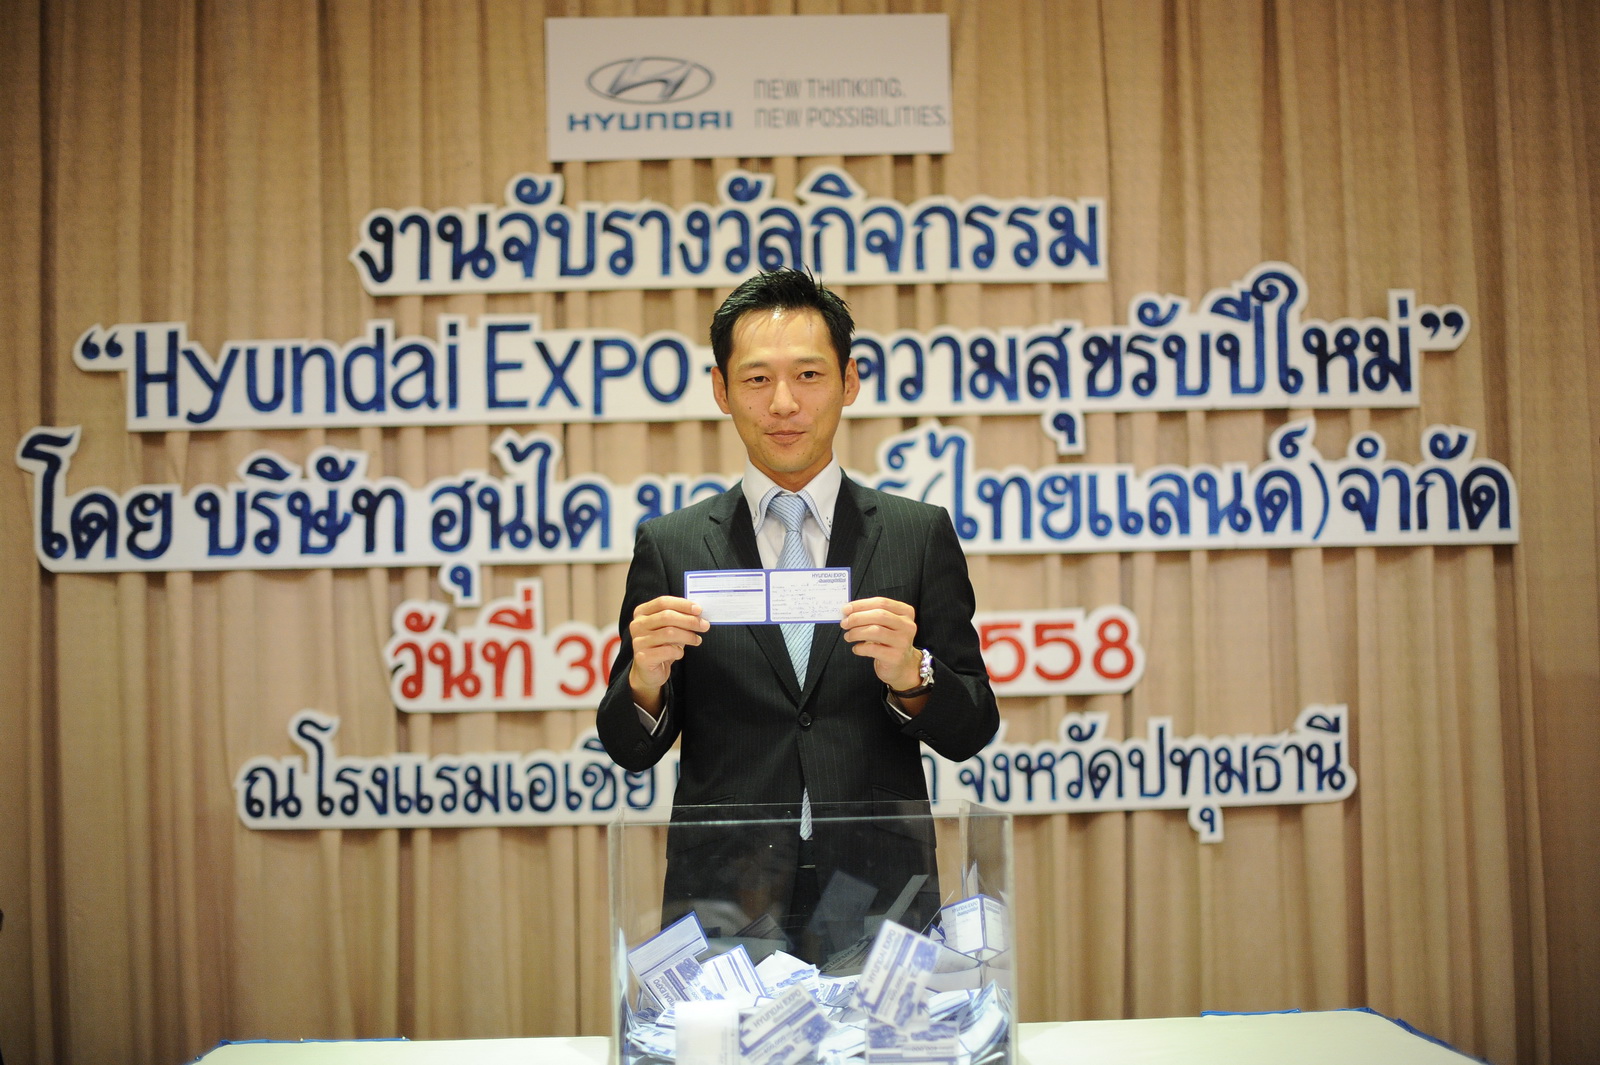 ฮุนไดจับรางวัลมอบโชคใหญ่ จากแคมเปญ “Hyundai Expo ส่งความสุขรับปีใหม่” รวมมูลค่ากว่า 400,000 บาท